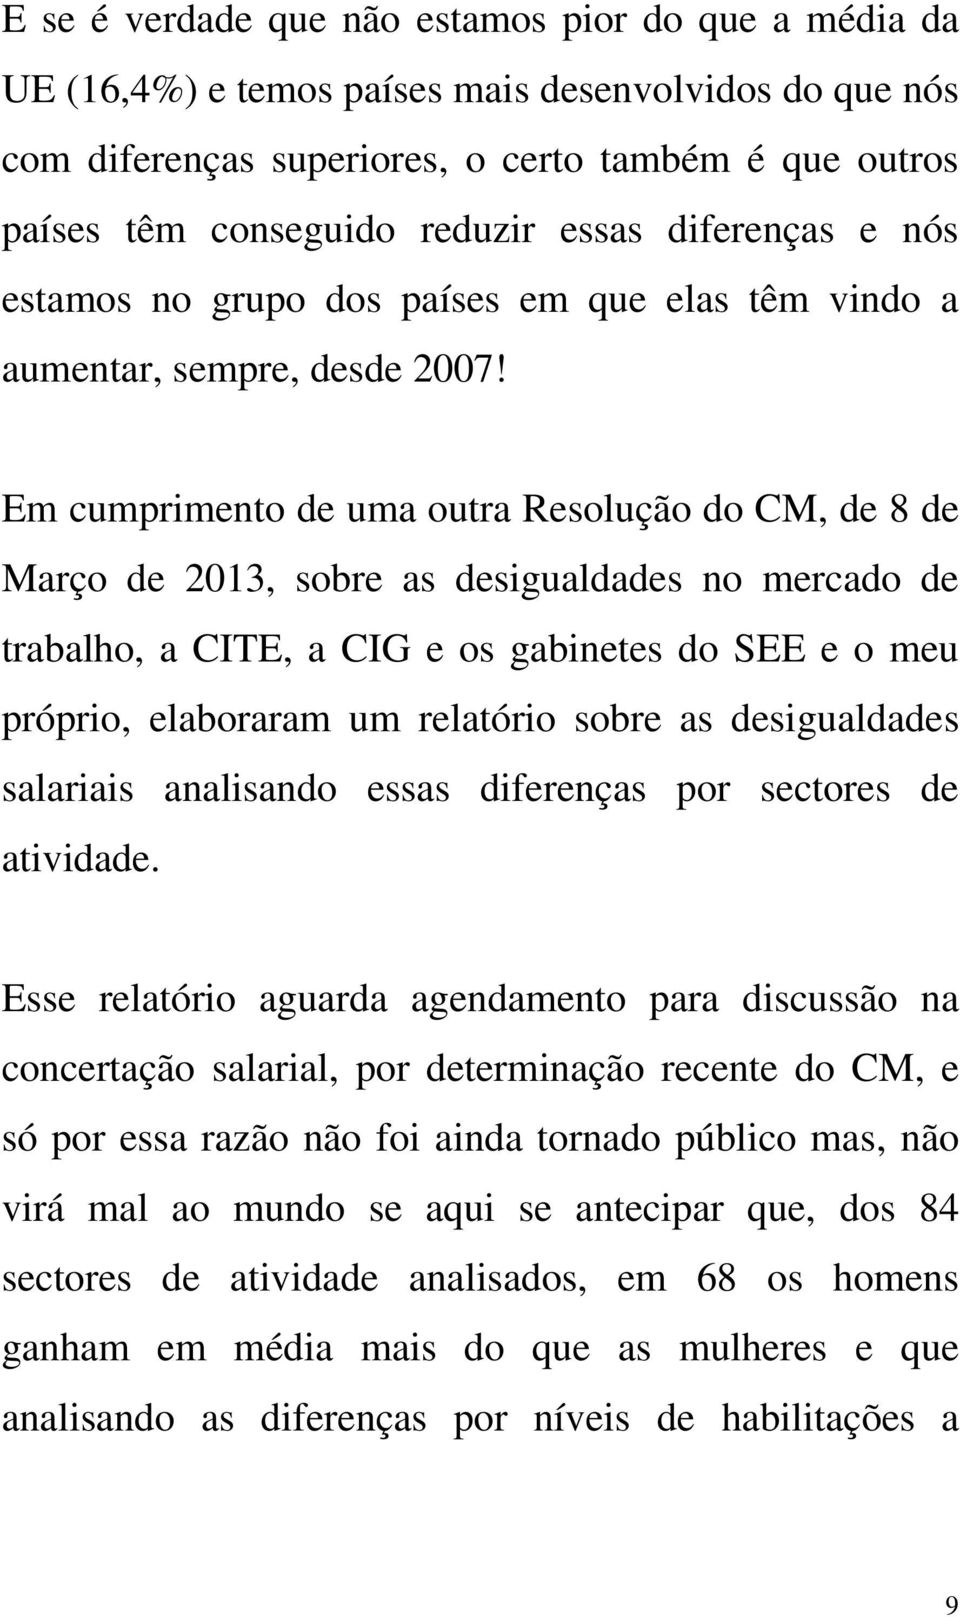 Em cumprimento de uma outra Resolução do CM, de 8 de Março de 2013, sobre as desigualdades no mercado de trabalho, a CITE, a CIG e os gabinetes do SEE e o meu próprio, elaboraram um relatório sobre